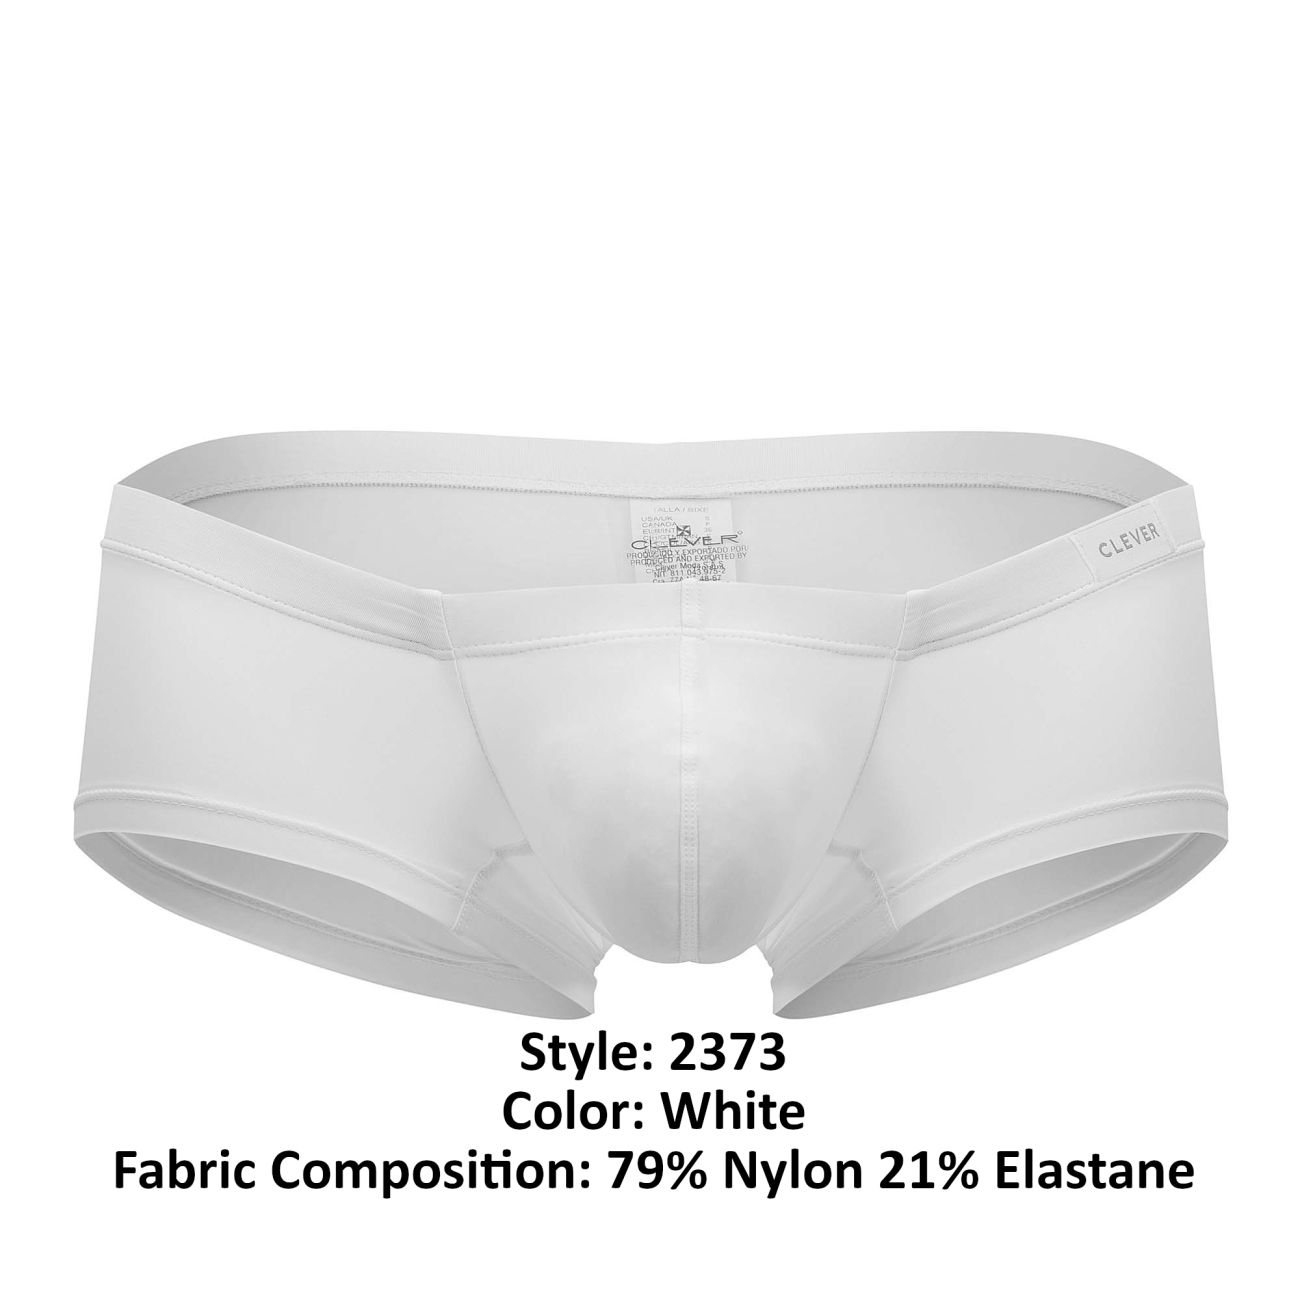 Mens Underwear: Clever 2373 Australian Latin Boxer Briefs | eBay